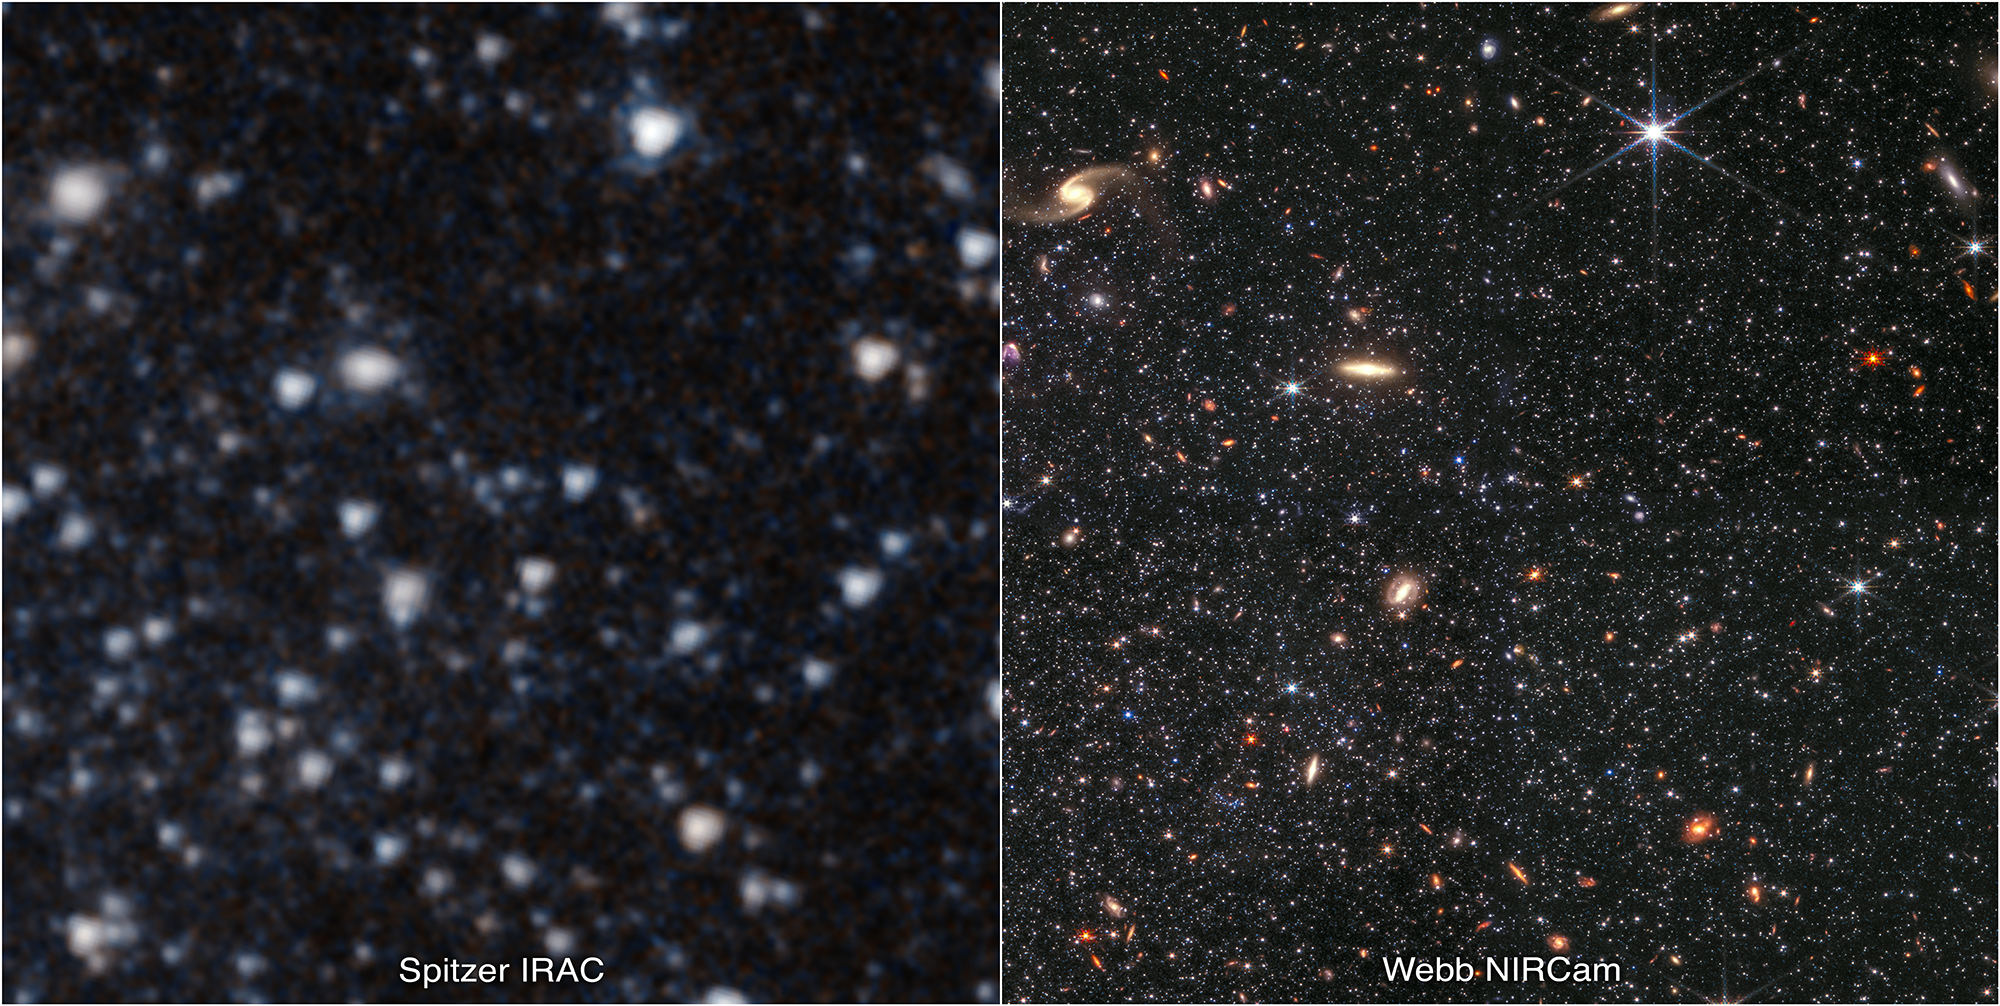 Porównanie tego samego fragmentu galaktyki Wolf-Lundmark-Melotte (WLM) na zdjęciu wykonanym przez Kosmiczny Teleskop Spitzera (po lewej) i Kosmiczny Teleskop Jamesa Webba (po prawej). Na zdjęciu po prawej widać niezwykłą zdolność teleskopu Webba do detekcji słabych gwiazd poza Drogą Mleczną. Mapowanie kolorów na zdjęciach: teleskop Spitzera → fotonom λ = 3,6μm / 4,5μm odpowiadają kolory niebieskozielony / pomarańczowy; teleskop Webba → fotonom λ = 0,9μm / 1,5μm / 2,5μm / 4,3μm odpowiadają kolory = niebieski / niebieskozielony / żółty / czerwony. Pole widzenia obejmuje około 2’ (~1700 l.św. przy odległości do galaktyki WLM). Źródło: NASA, ESA, CSA, IPAC, Kristen McQuinn (RU), Zolt G. Levay (STScI), Alyssa Pagan (STScI)